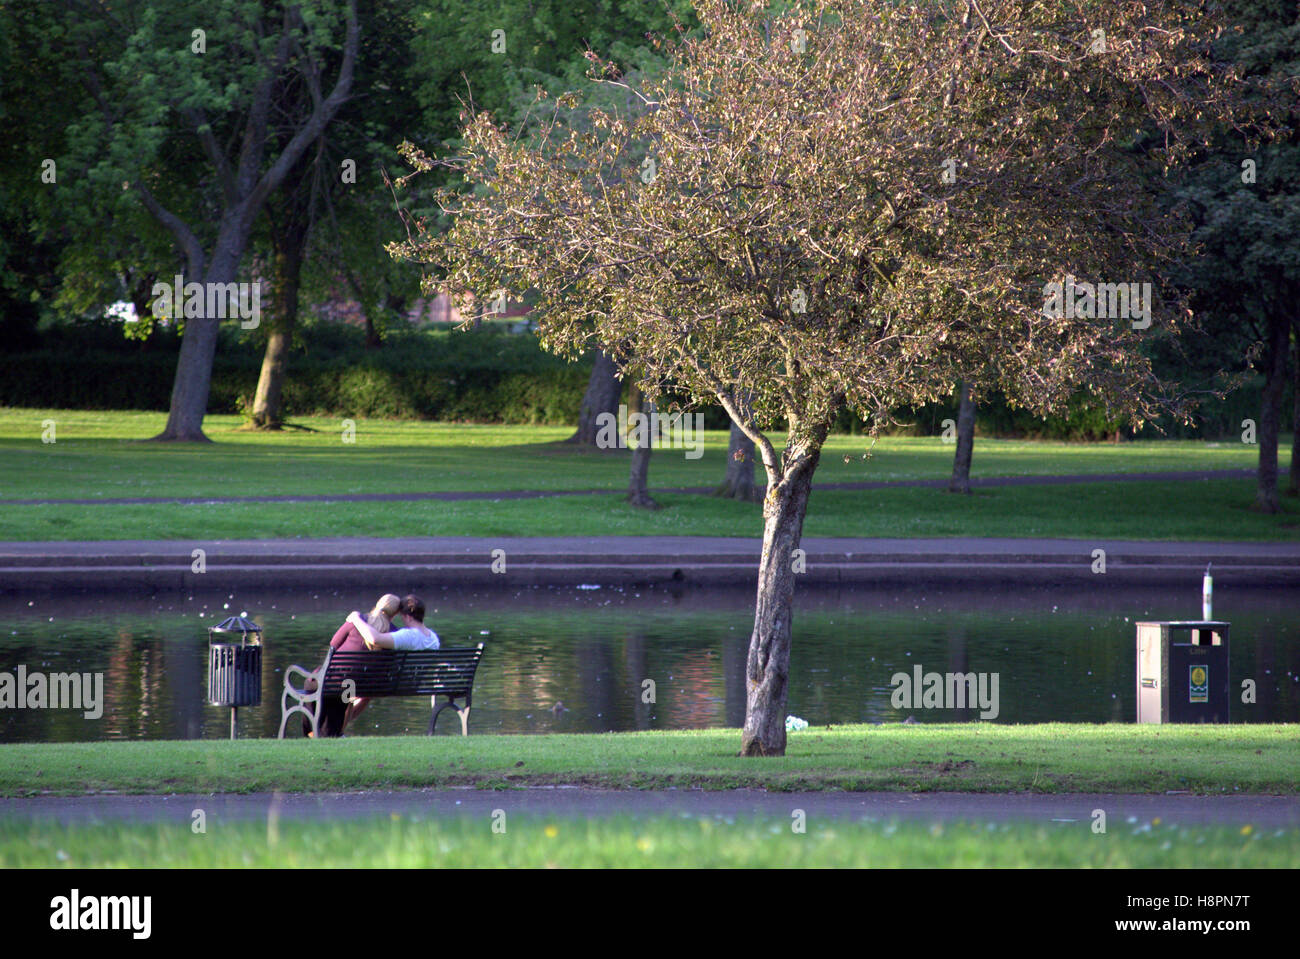 Coppia giovane su una panchina del parco parco Knightswood stagno o lago Foto Stock